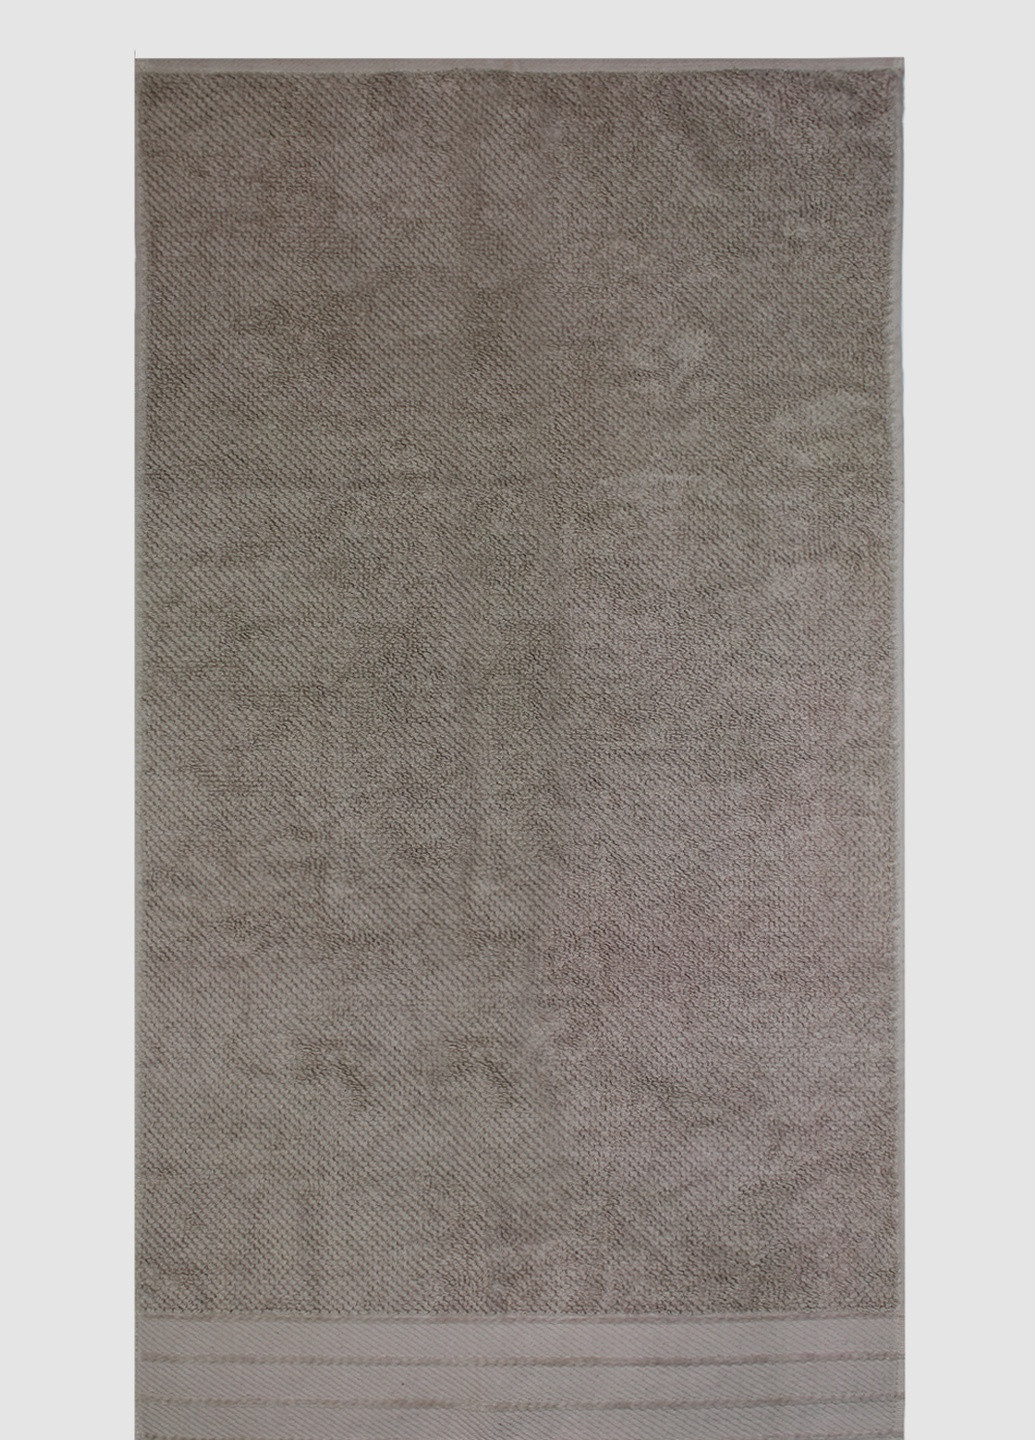 Bulgaria-Tex полотенце махровое riga, мокко, размер 70x140 cm кофейный производство - Болгария